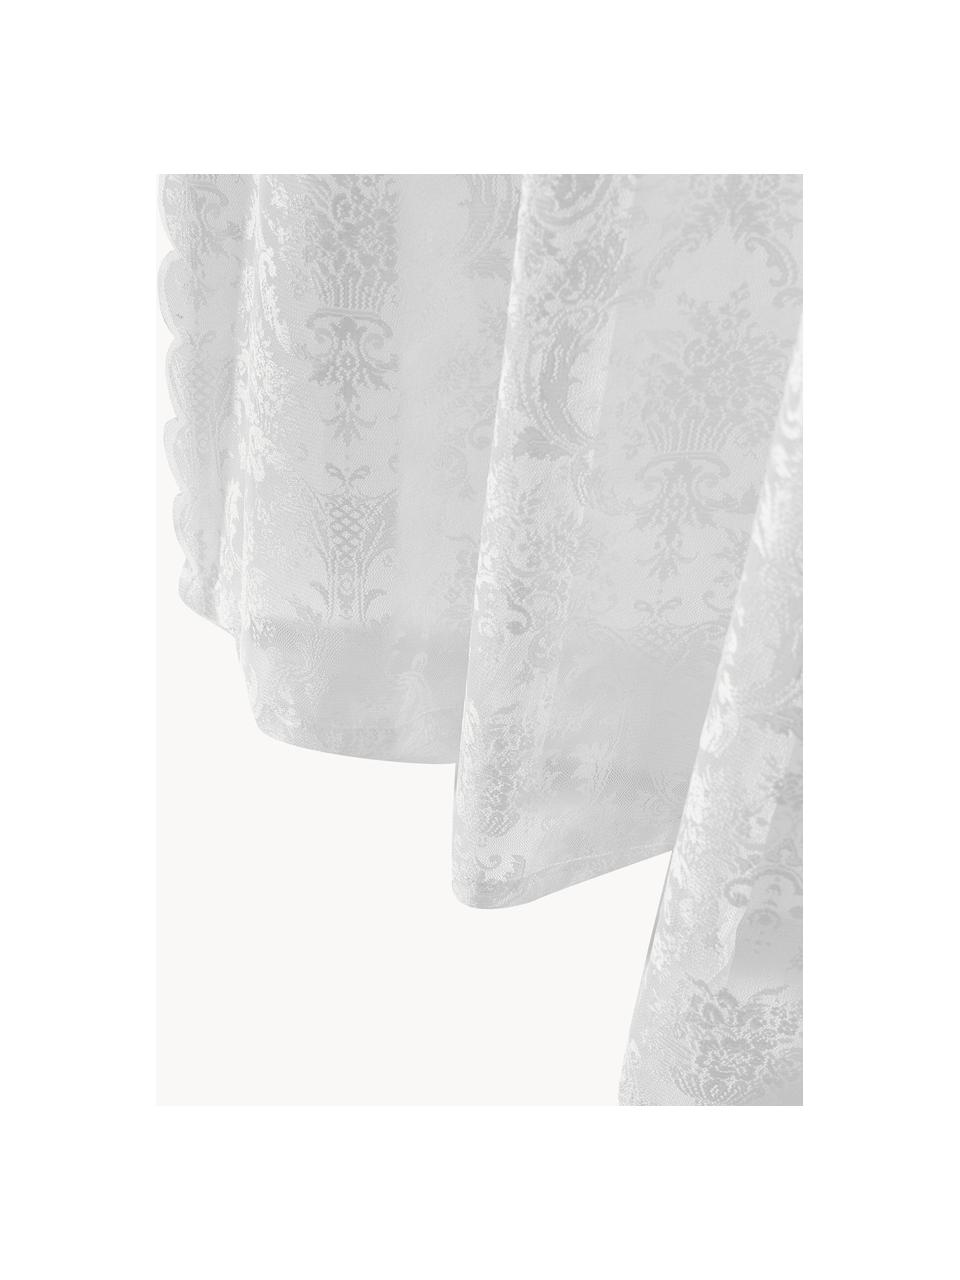 Cortinas transparentes con dobladillo Lacina, 2 uds., 100% poliéster, Blanco, An 140 x L 250 cm